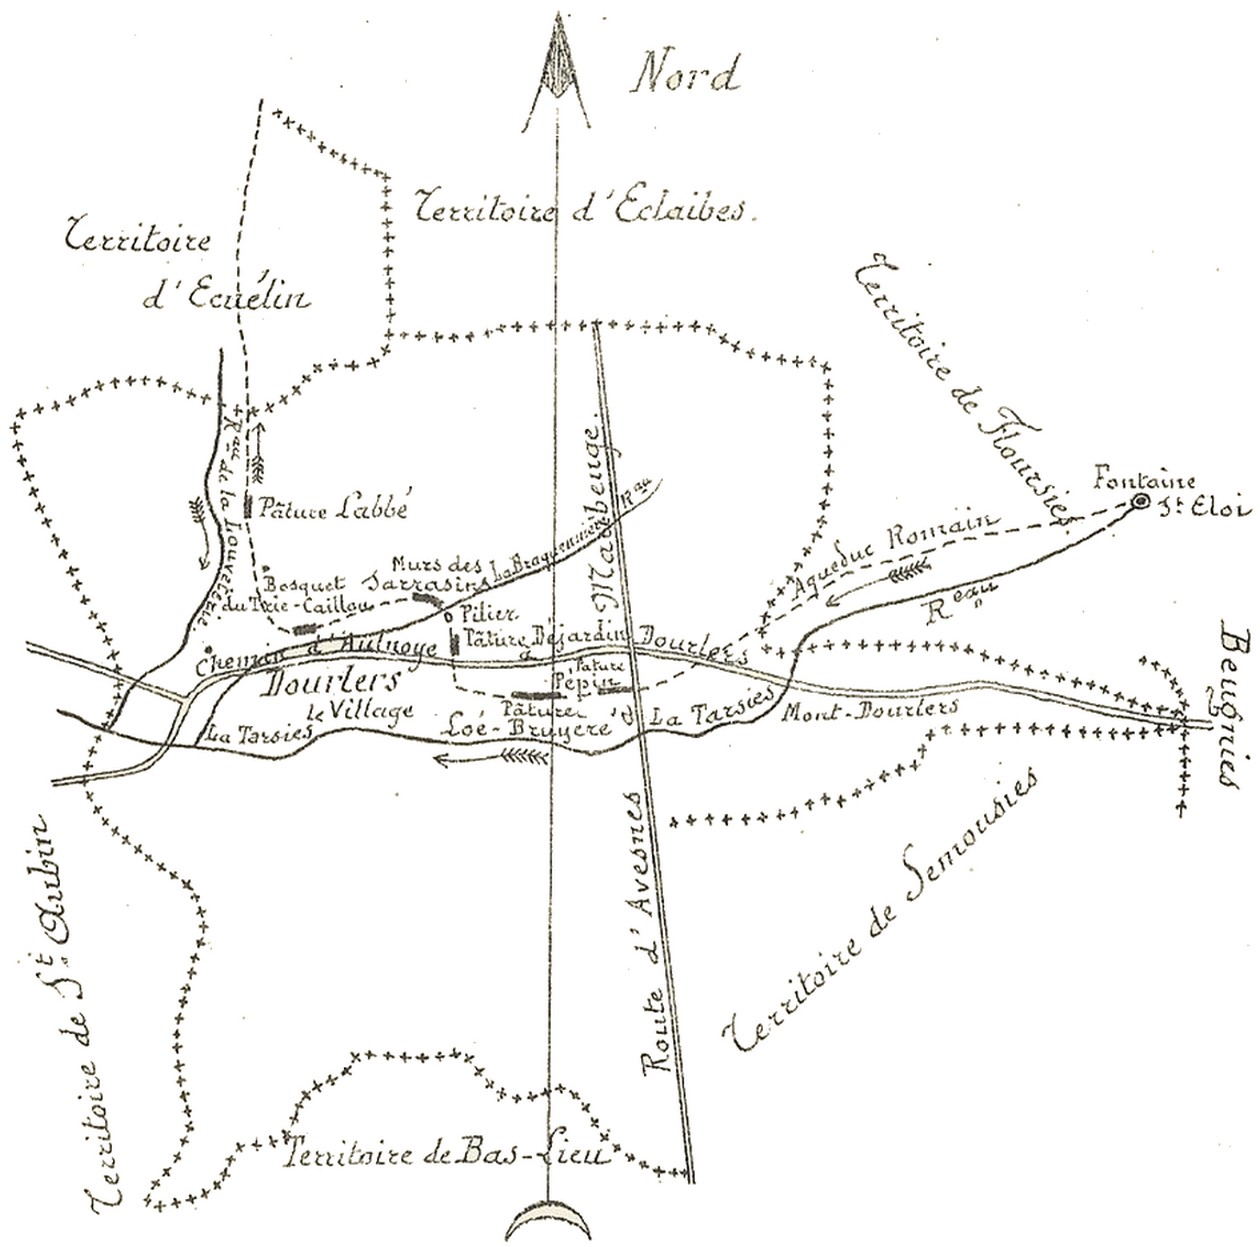 Carte des vestiges répertoriés à Dourlers par Chevalier. (1833)